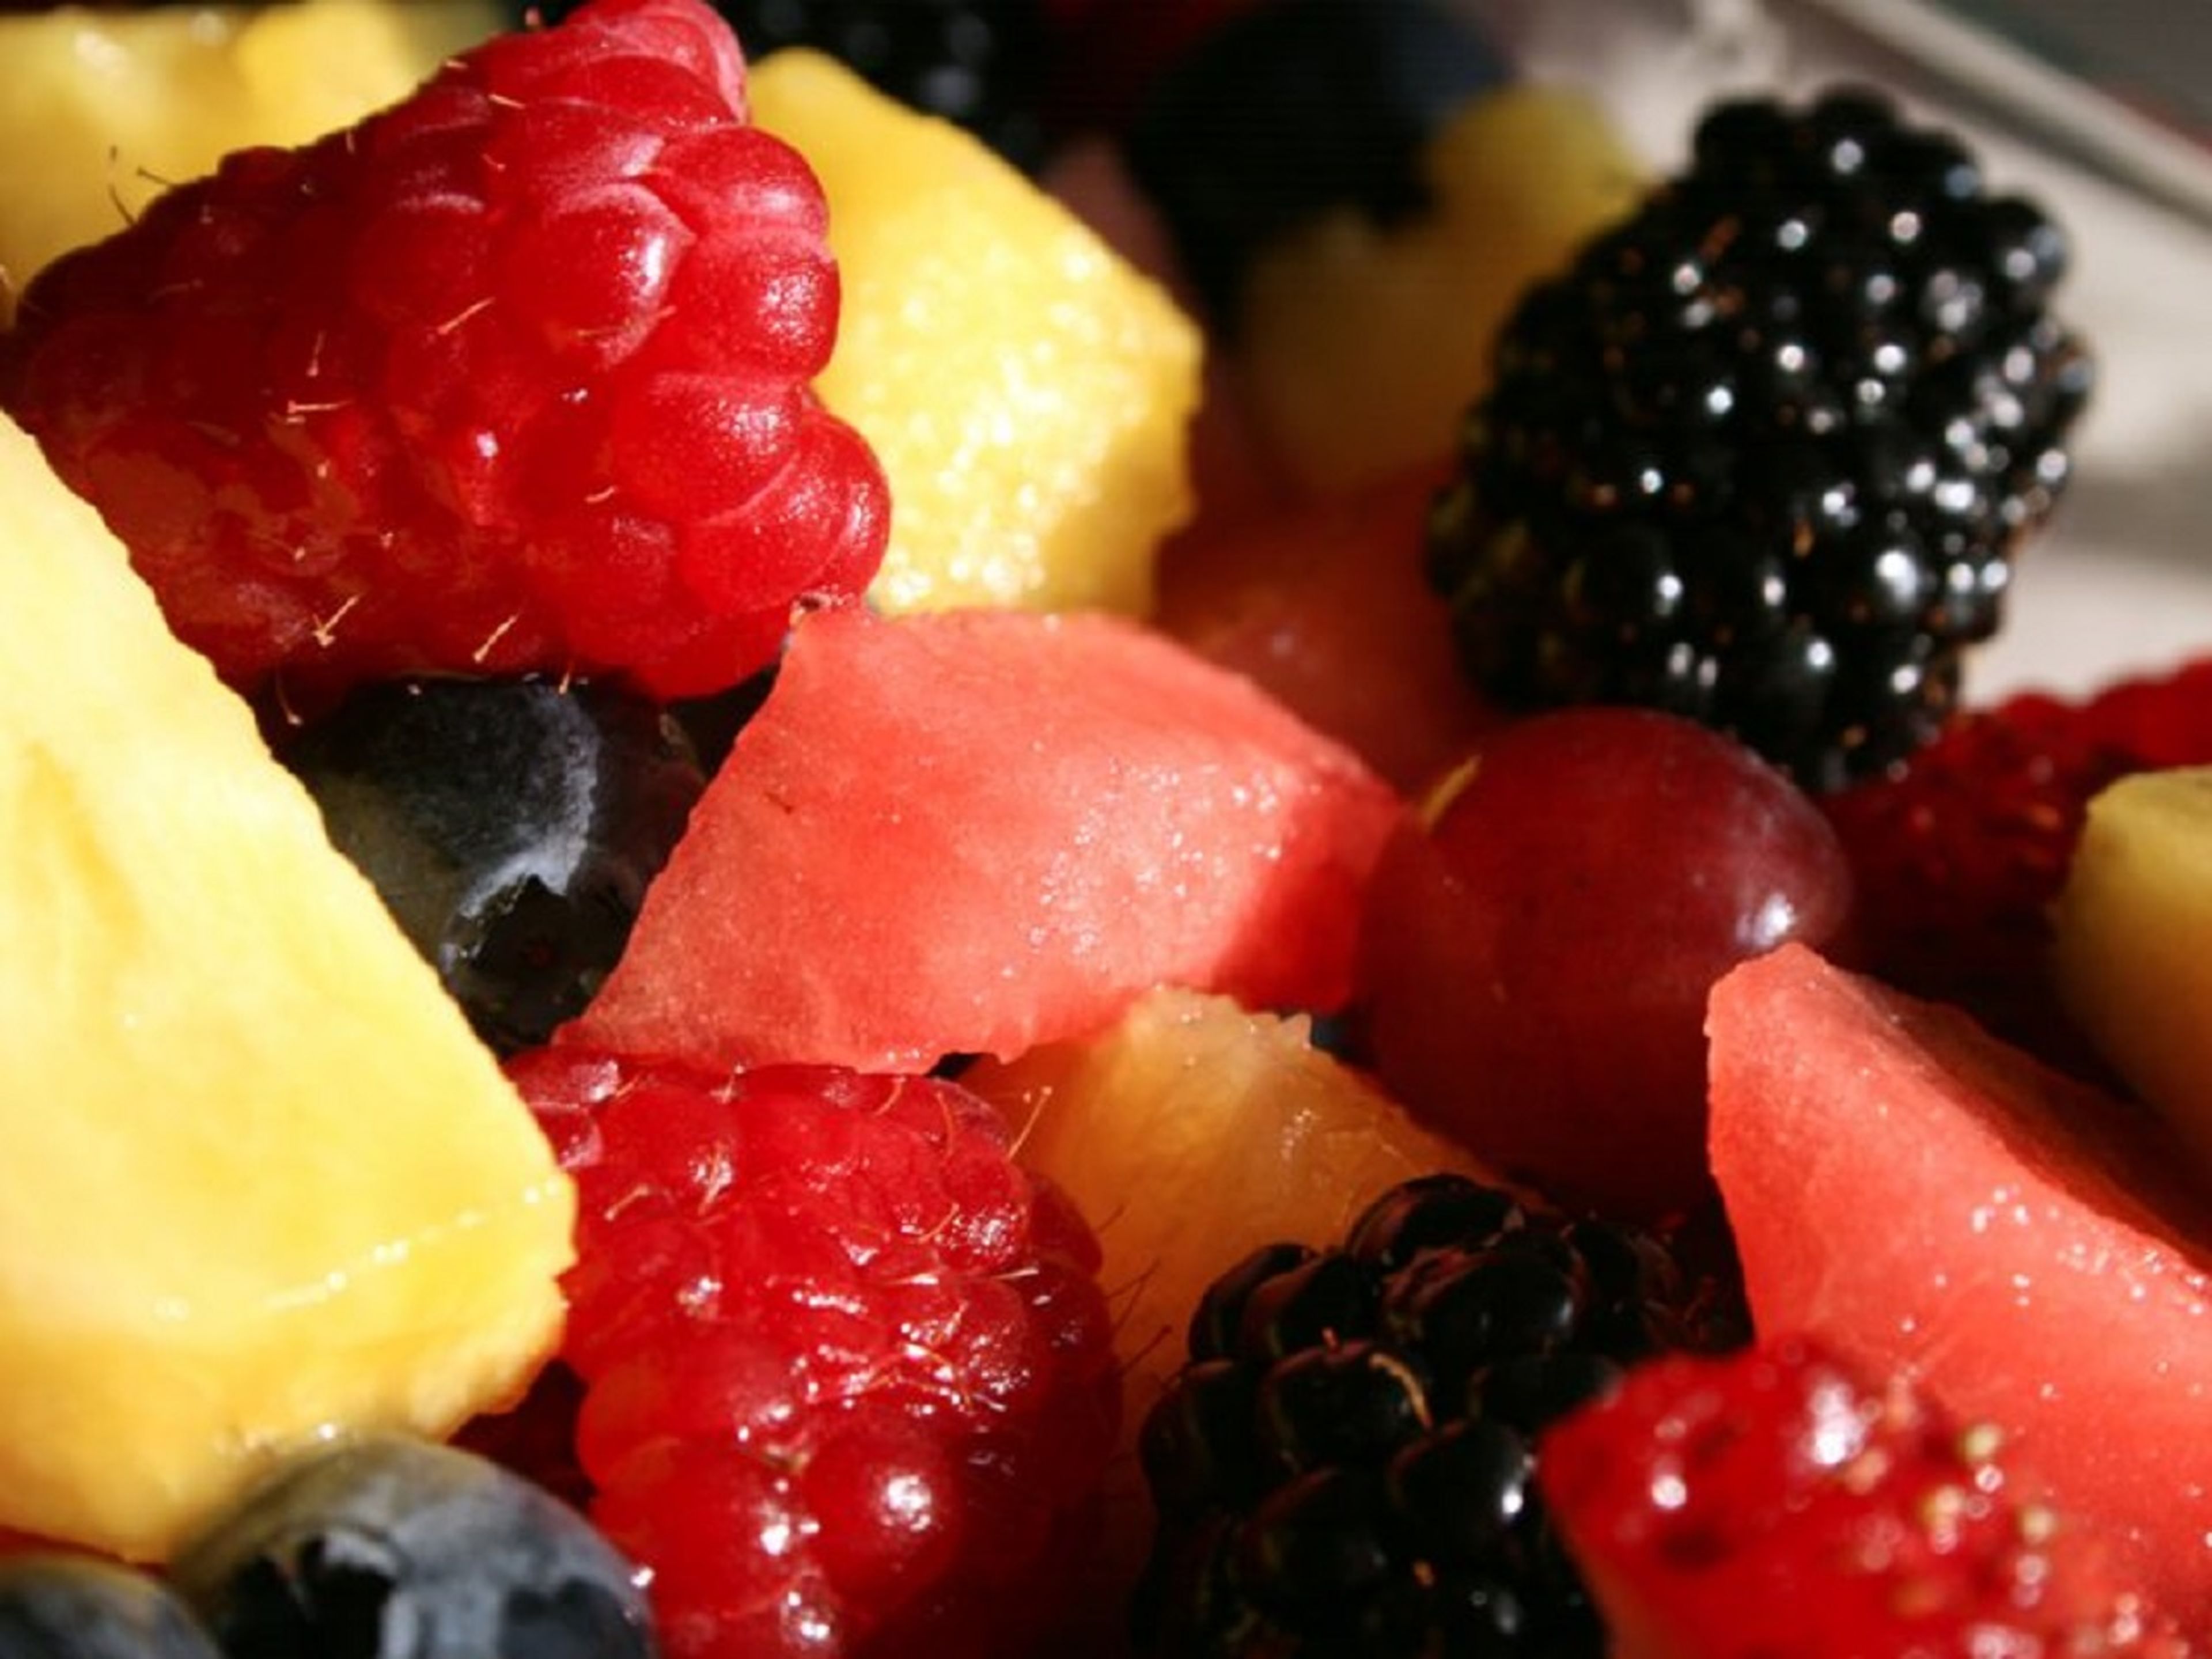 Frutas y verduras precortadas o prelavadas